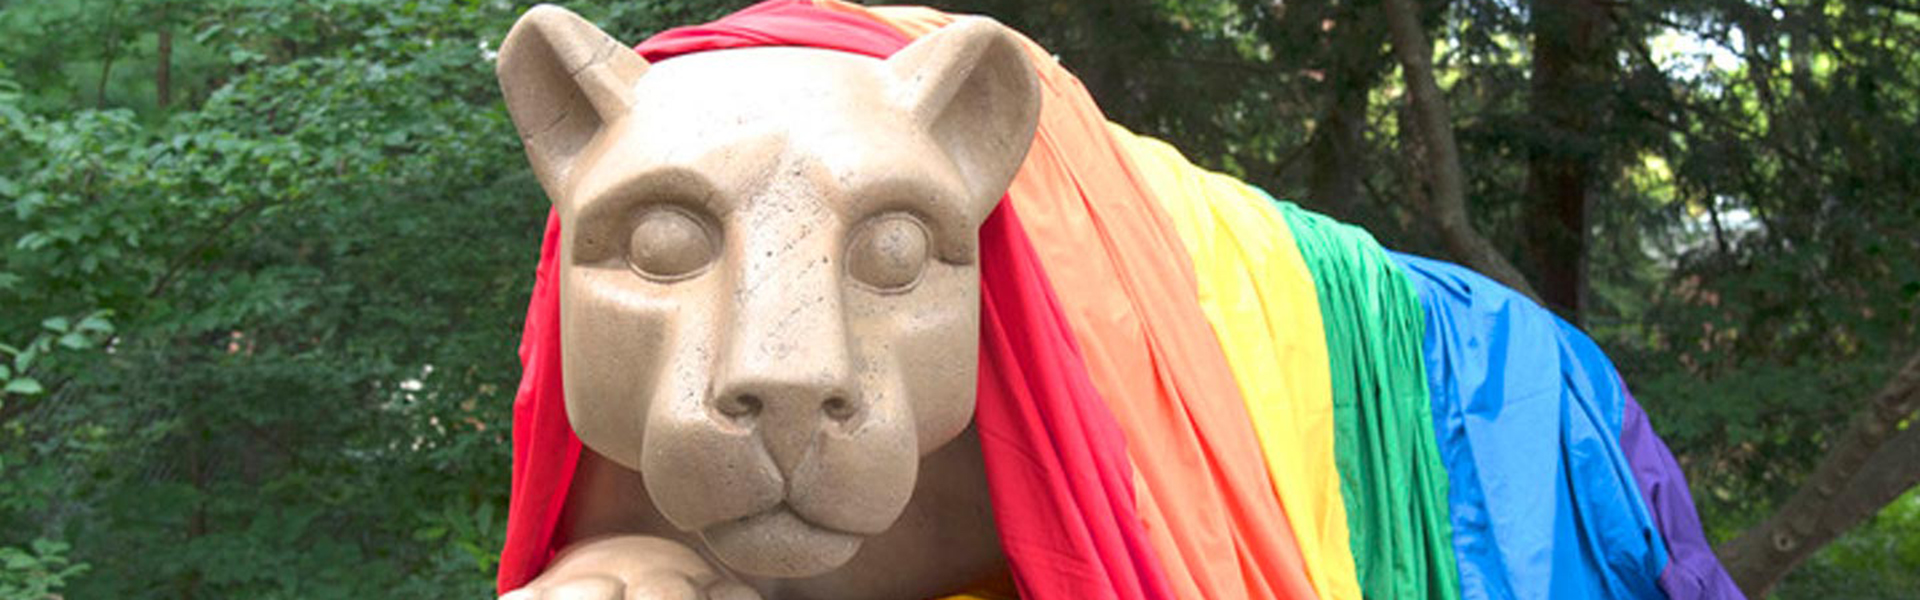 Lion with rainbow flag